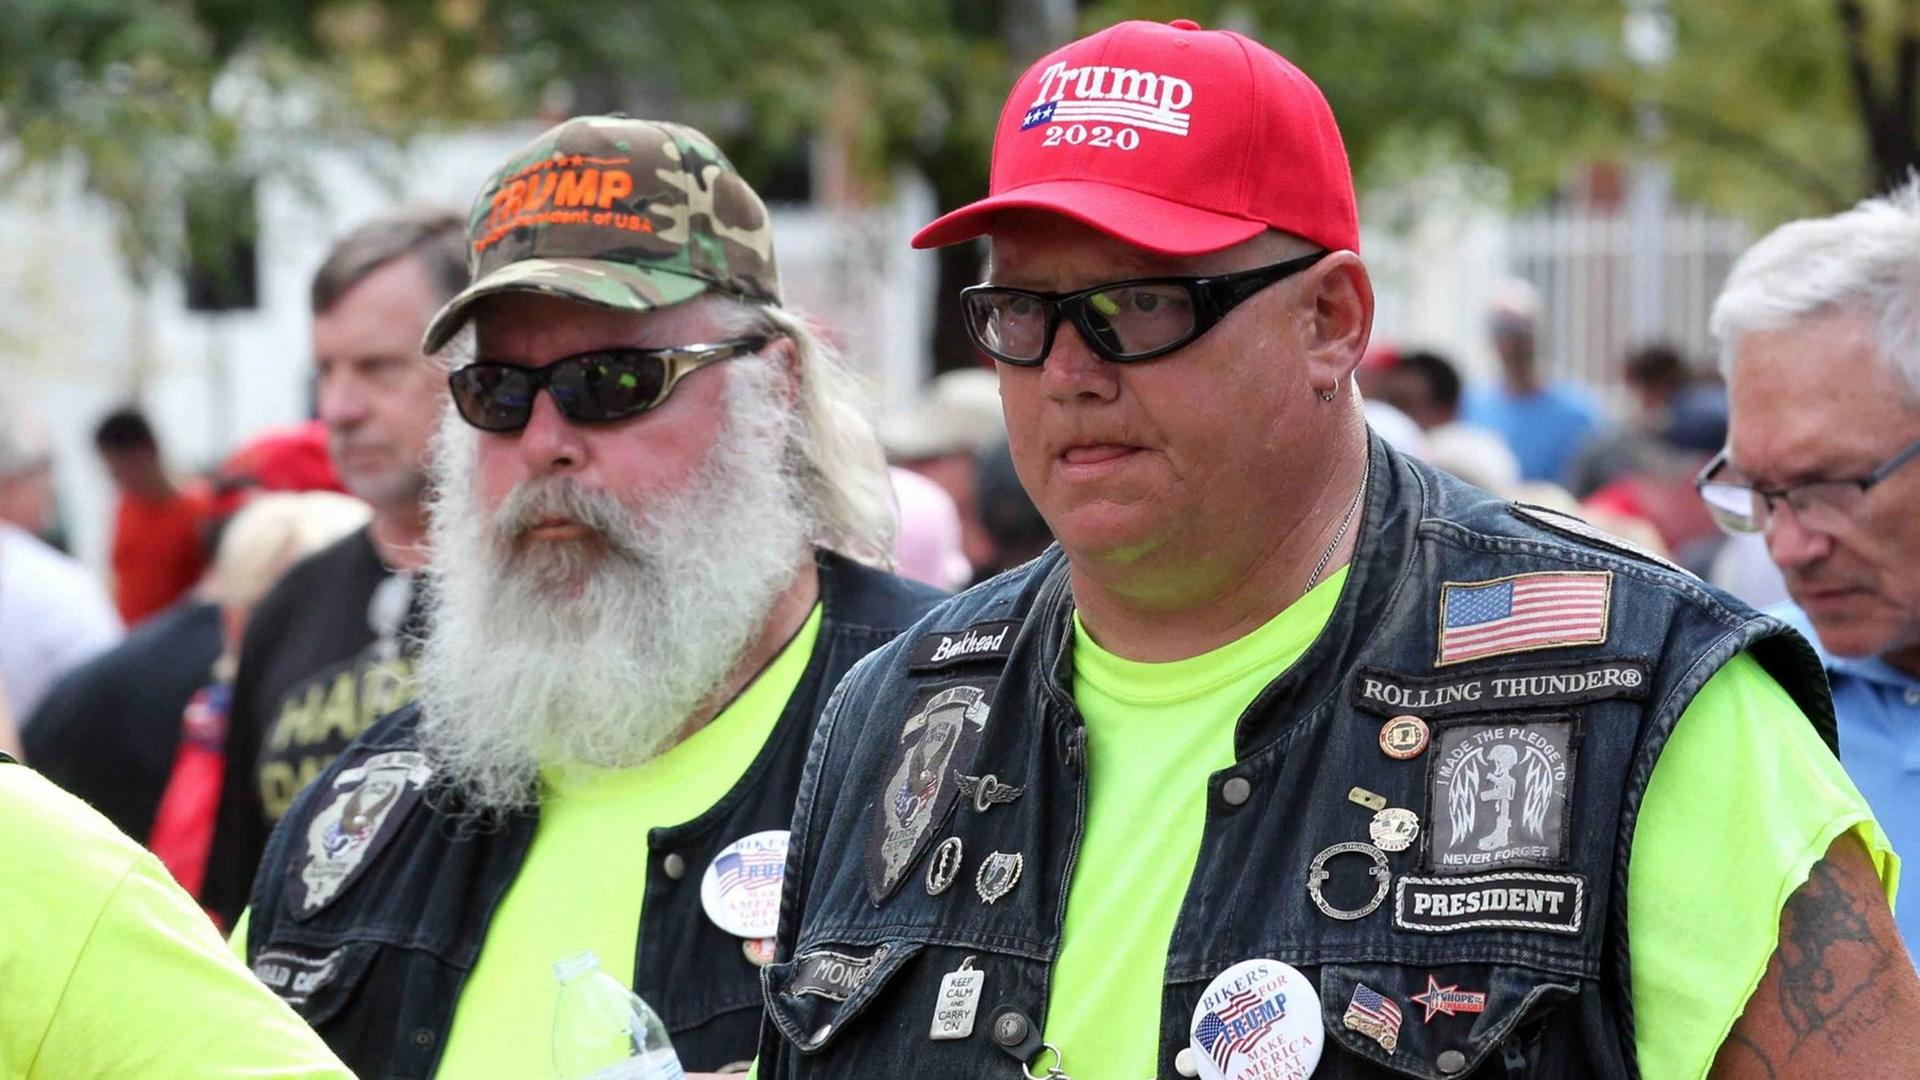 Trump-Fans mit Trump-Käppis, Sonnenbrillen und Biker-Westen